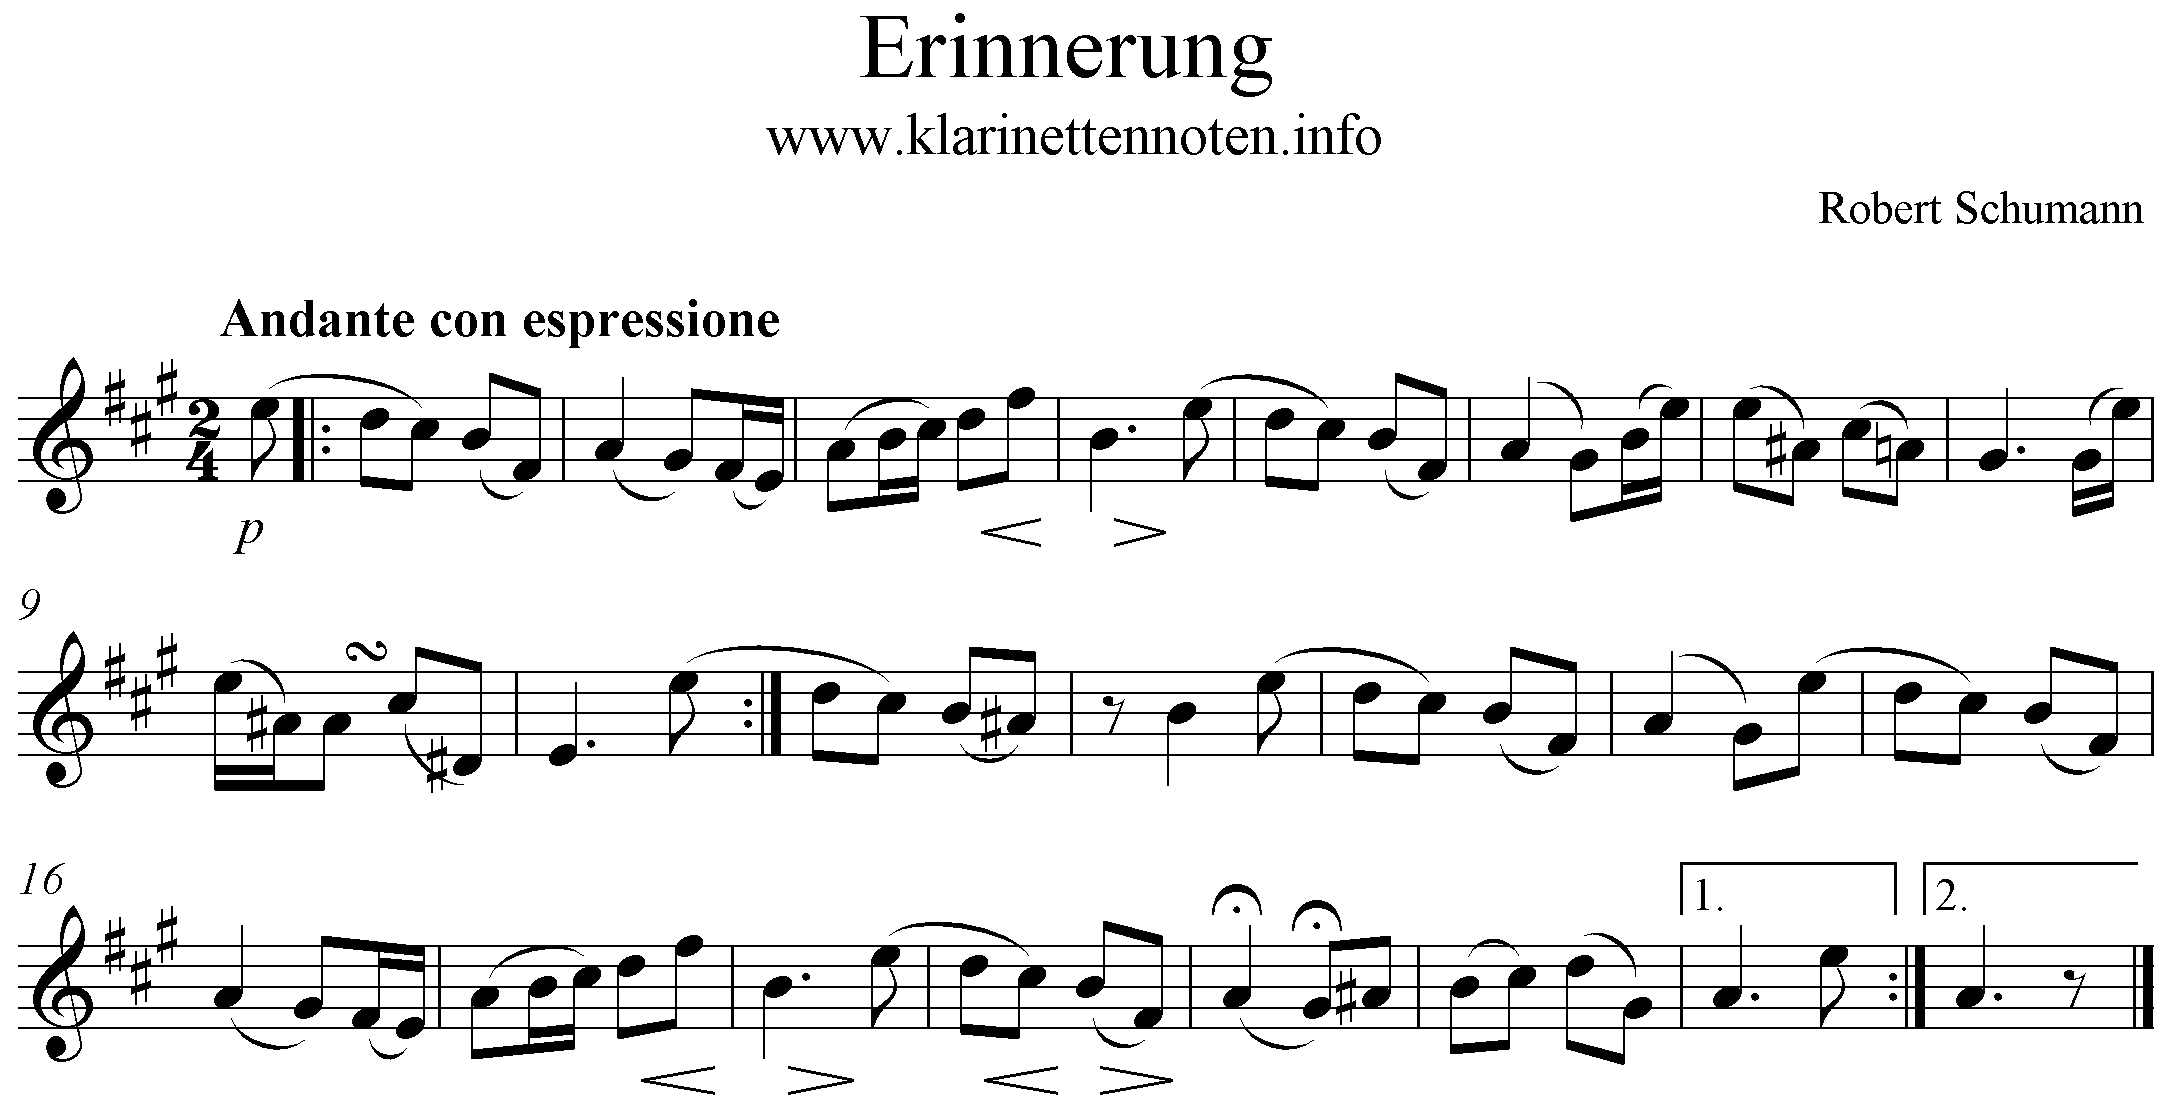 Erinnerung Robert Schumann op. 68 No. 28